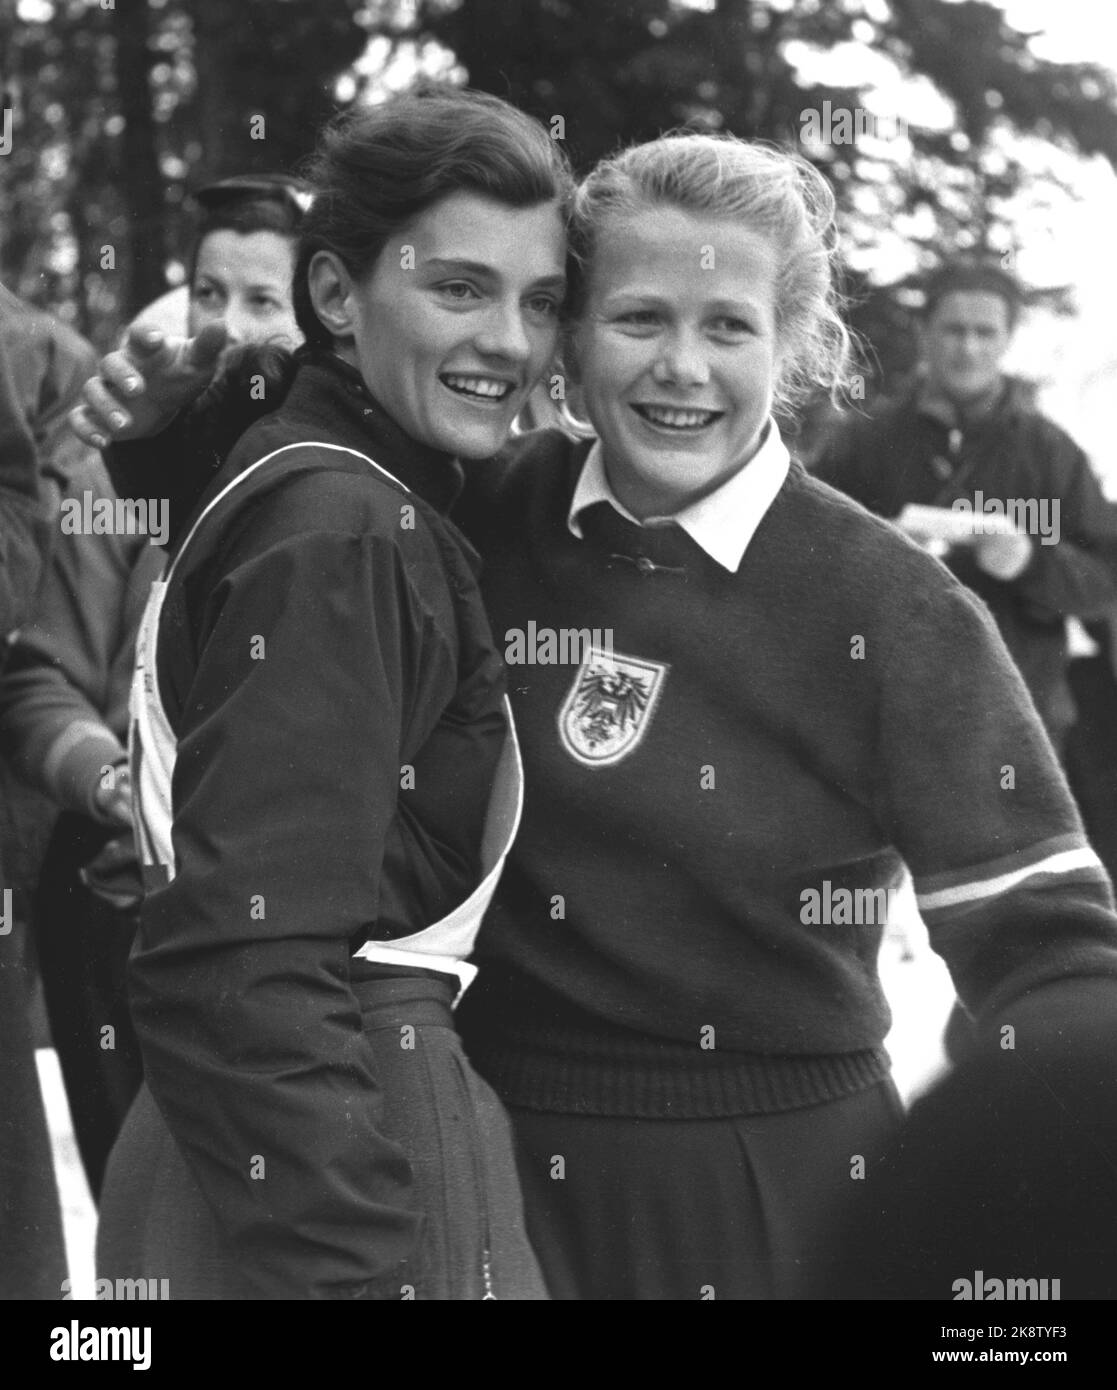 Jeux olympiques d'hiver 1952, Oslo. Stork slalom, femmes, sur Norefjell. Dagmar ROM (t.H.H.), Autriche, est devenu N°2, et a obtenu de l'argent. Ici, à côté de la gagnante, Andrea Mead Lawrence, USA (t.v.), qui a gagné l'or. Photo: Actuel / NTB Banque D'Images